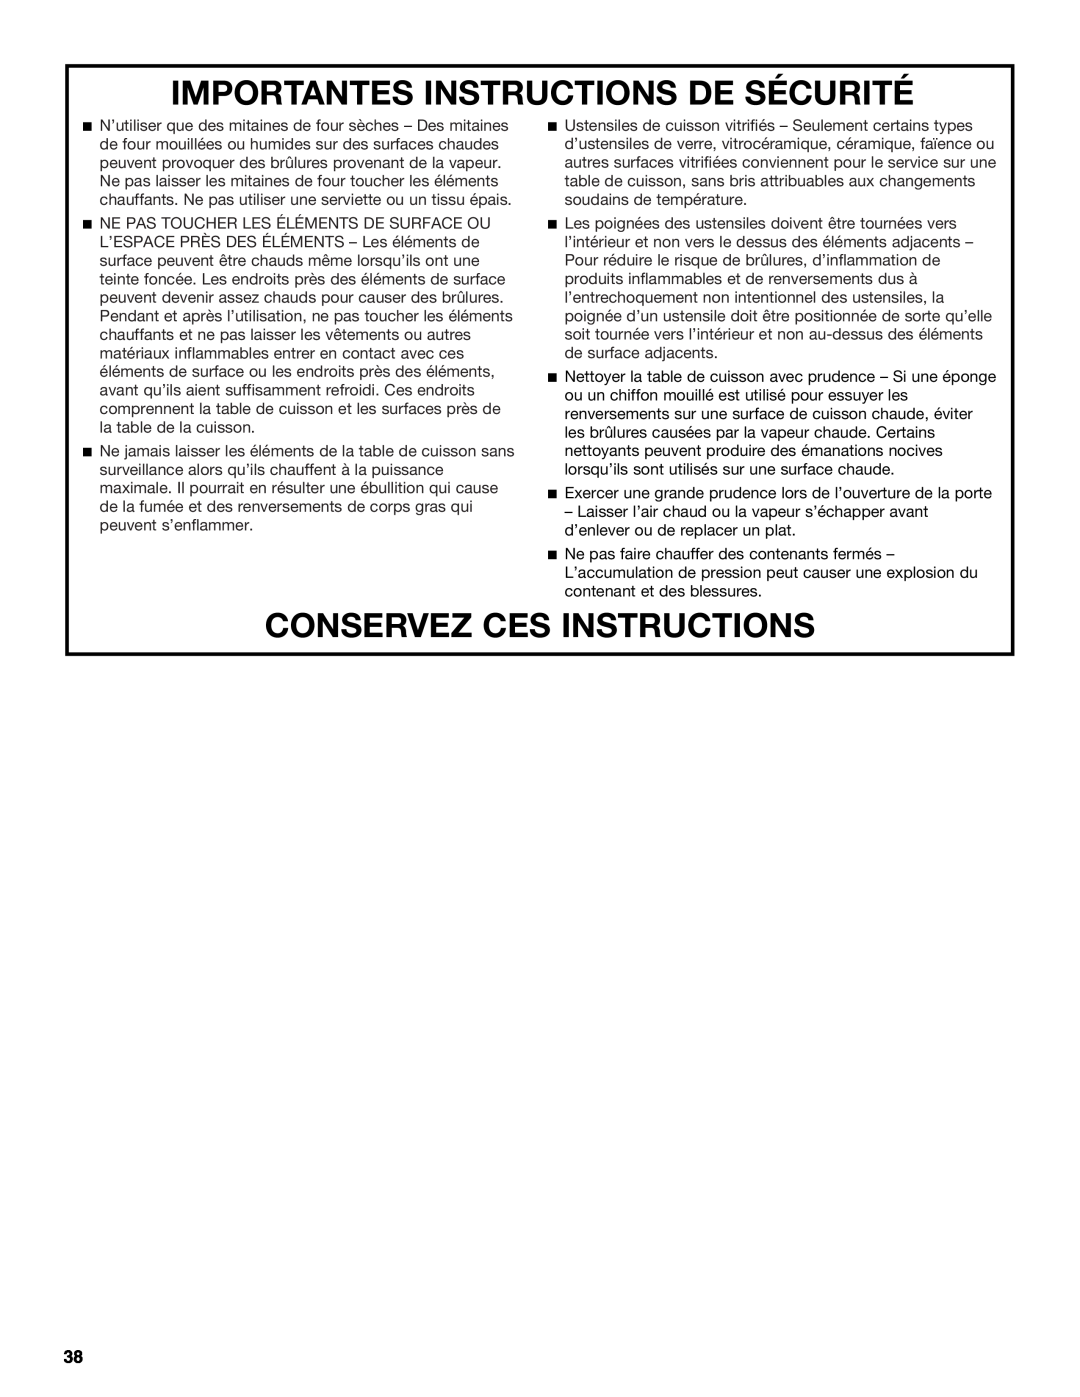 Jenn-Air JDRP430 manual Importantes Instructions De Sécurité, Conservez Ces Instructions 